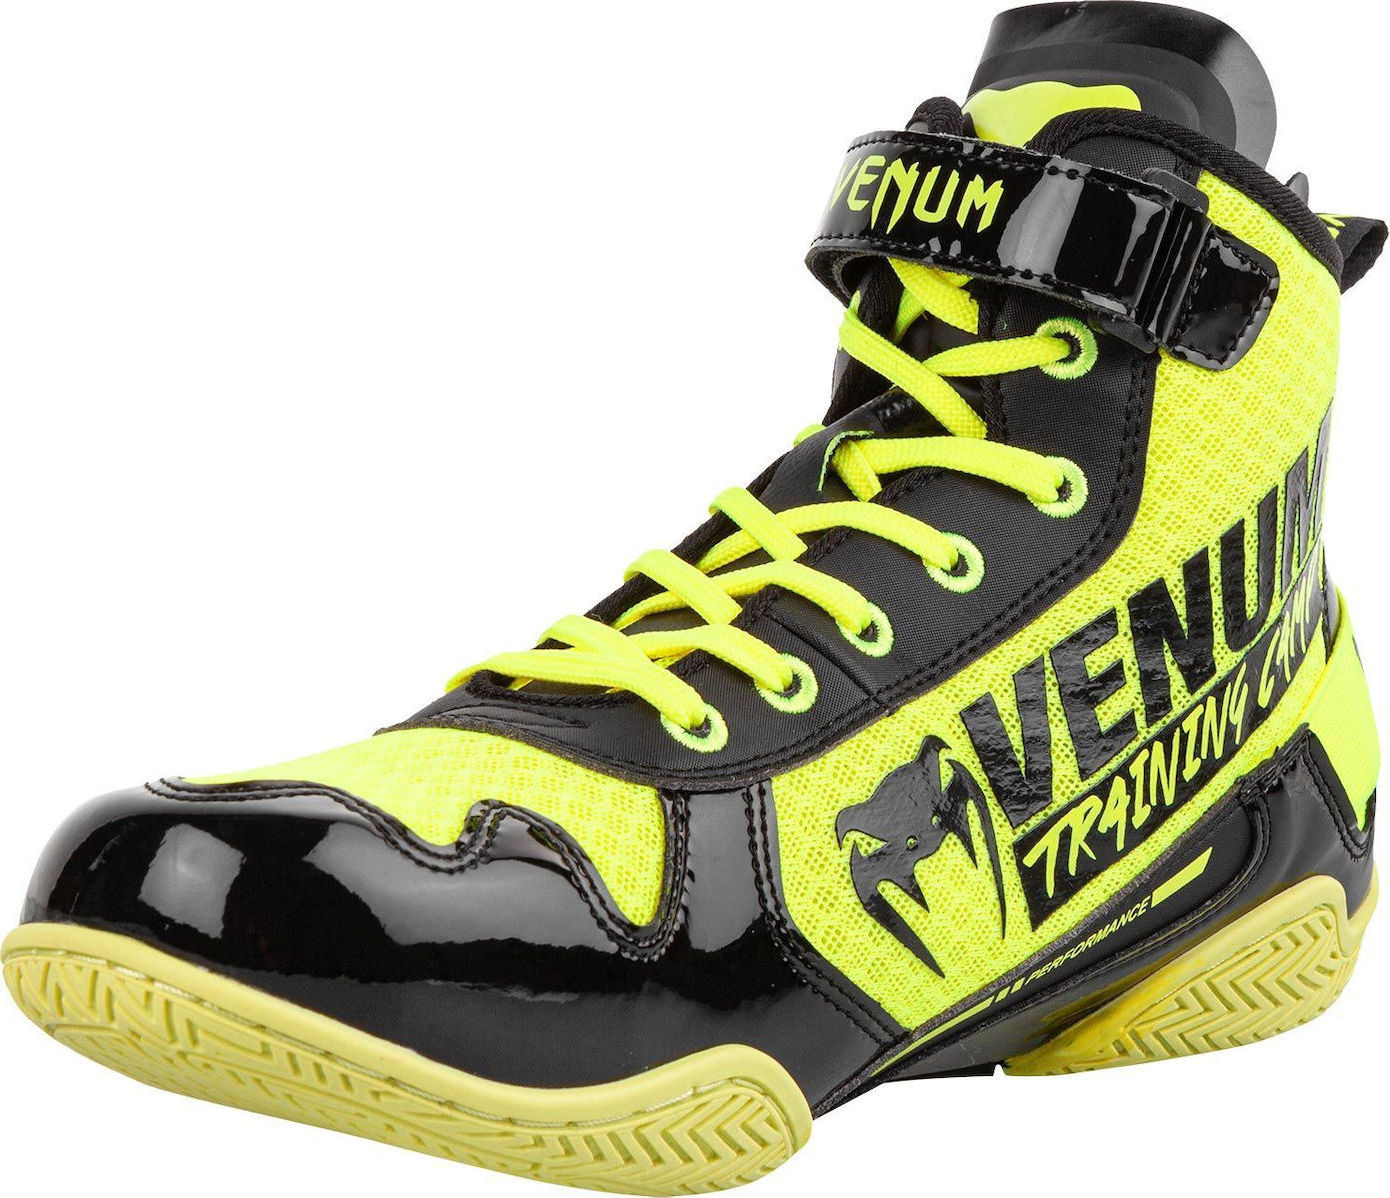 Πυγμαχικα Παπουτσια Venum Vtc 2 Edition Neo Yellow/Black